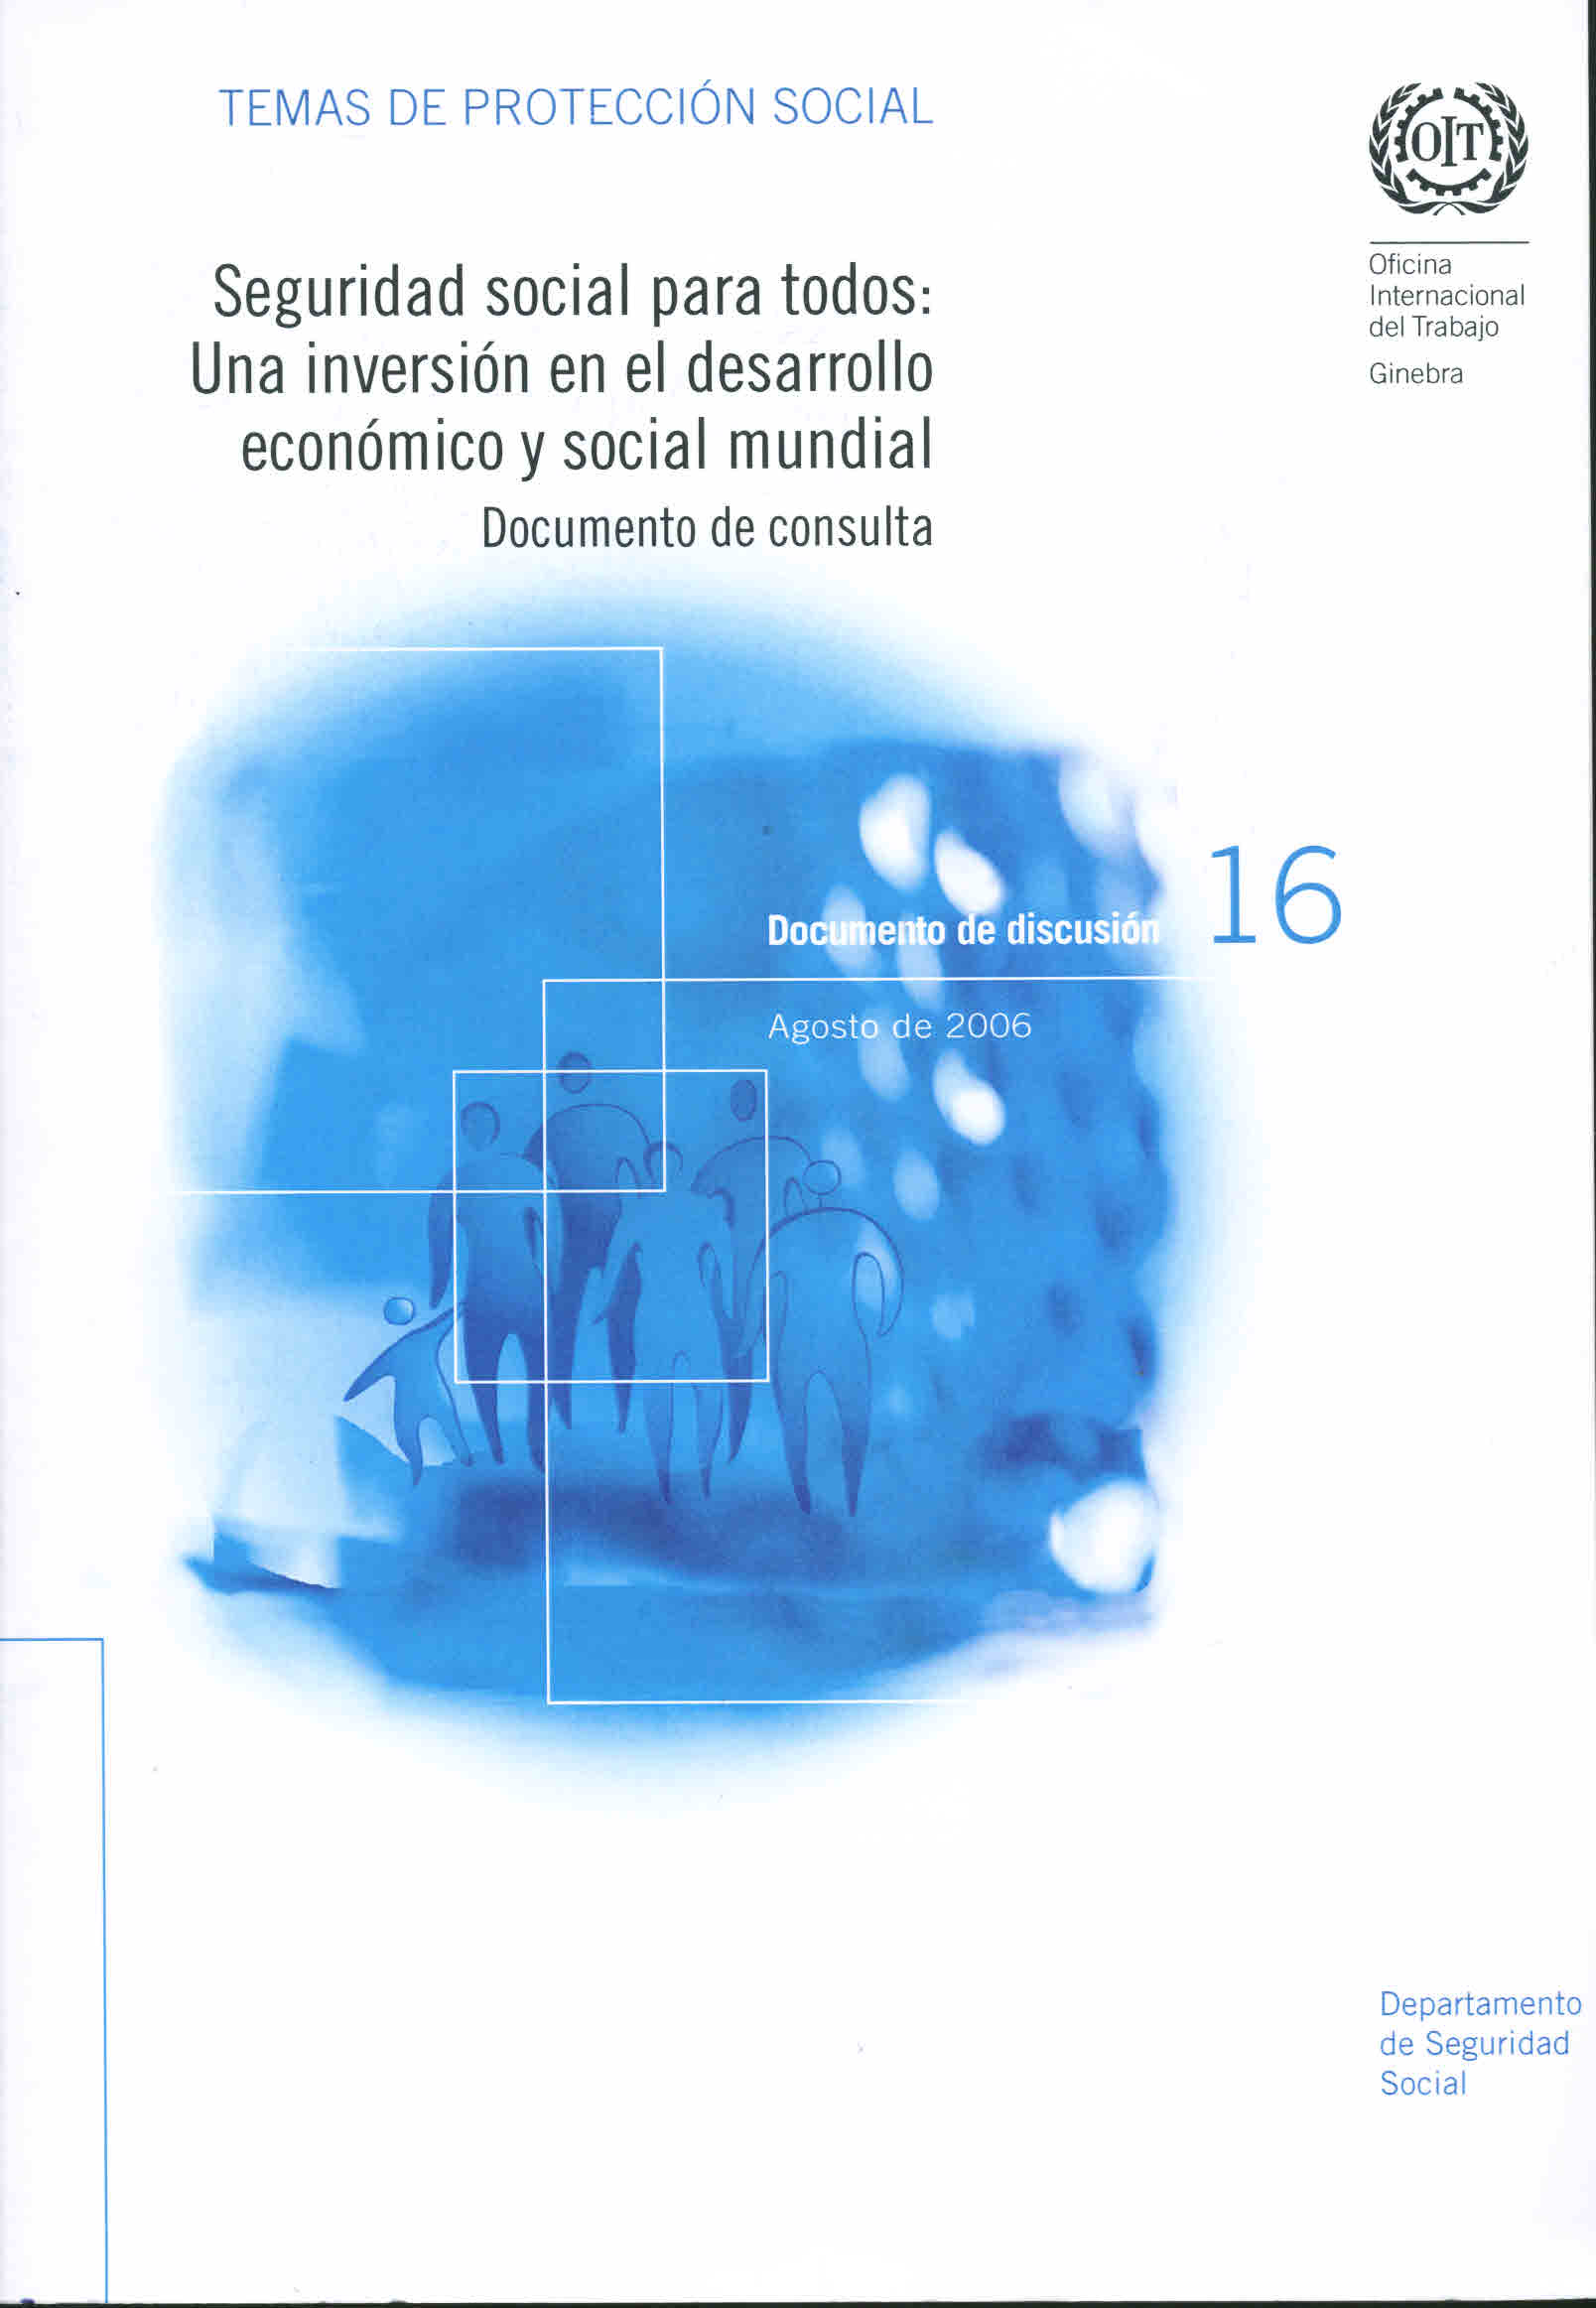 Seguridad social para todas: Una inversión en el desarrollo económico y social mundial. Documento de consulta